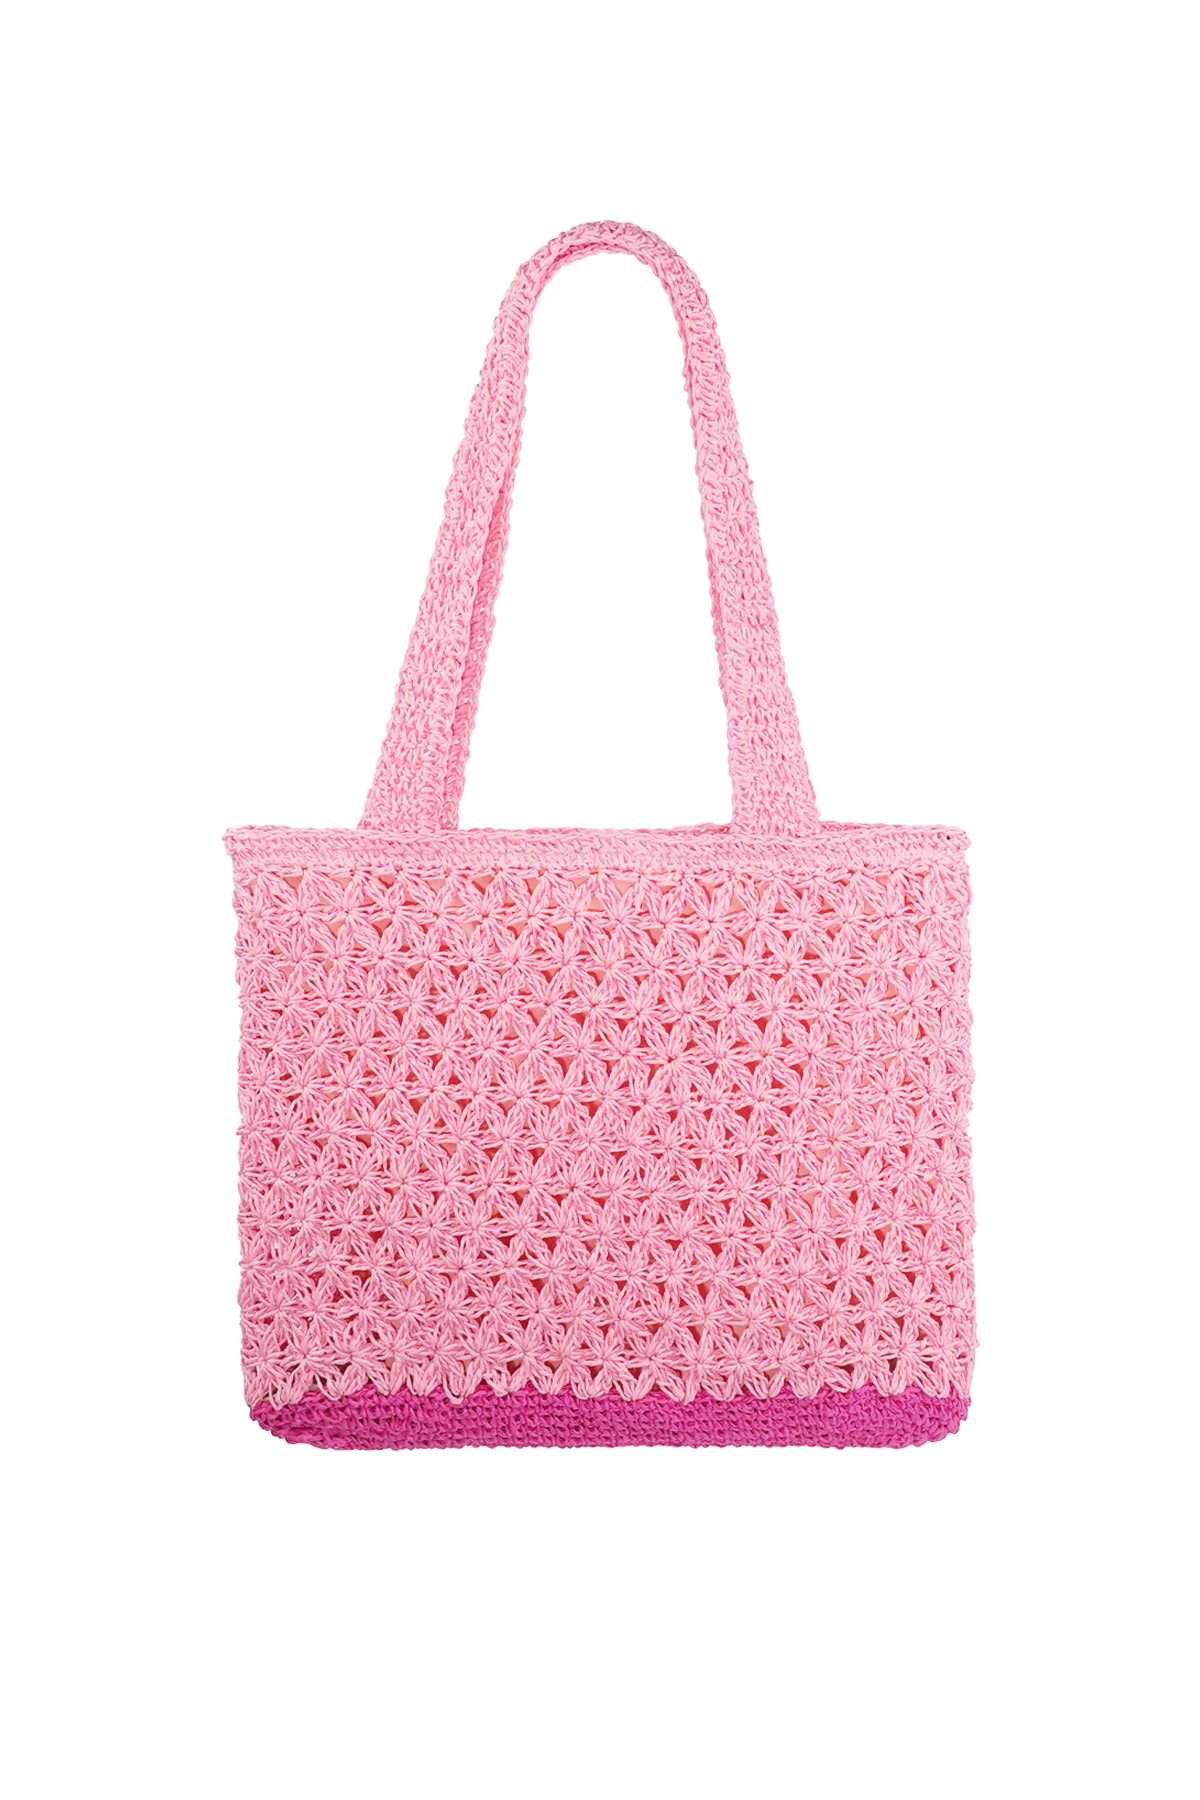 Crochet beach shopper - pink